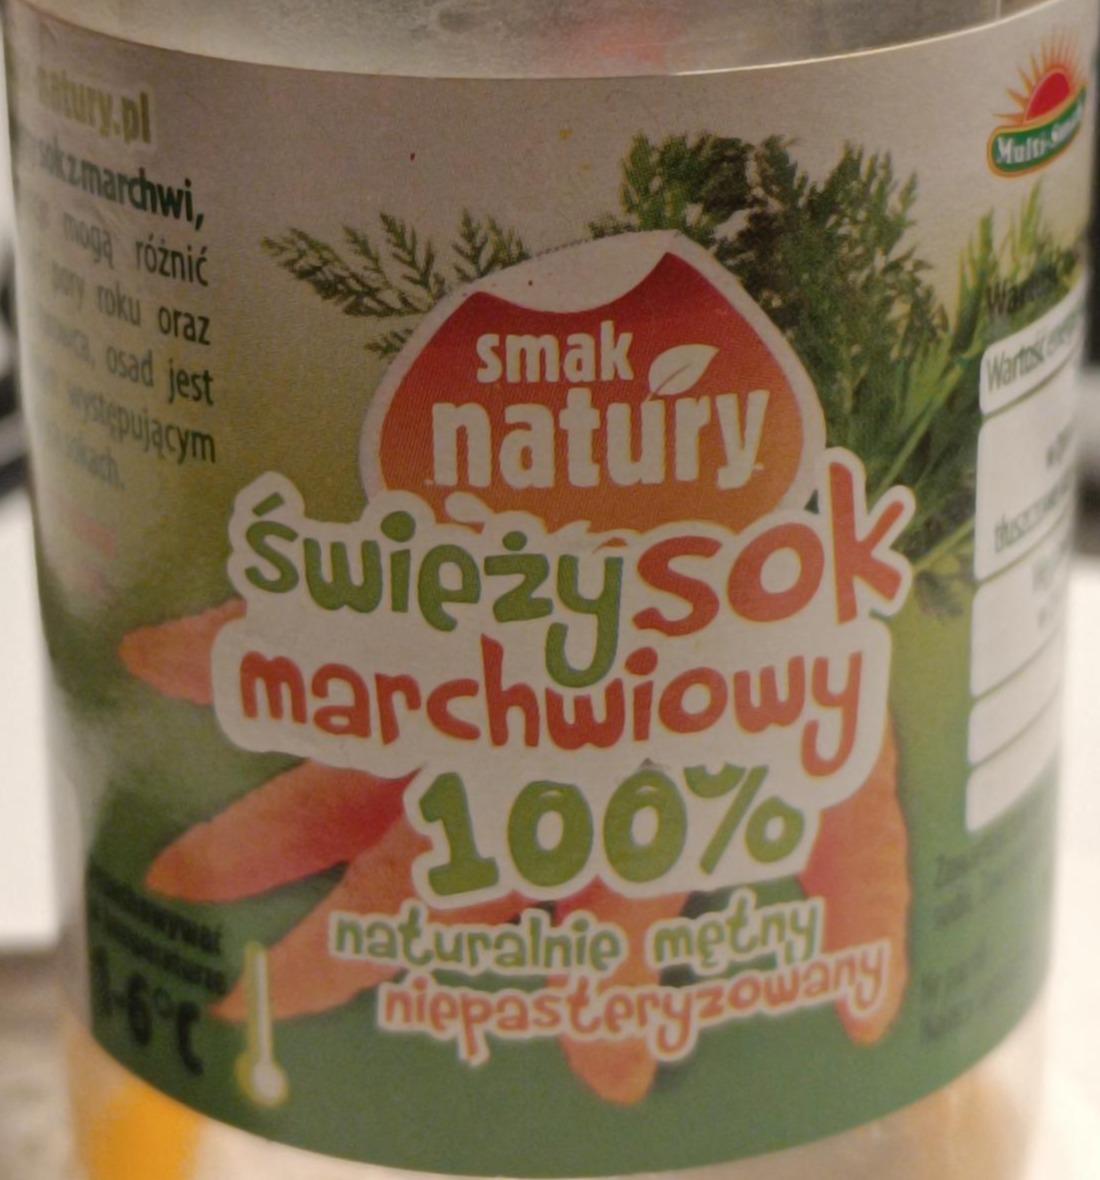 Zdjęcia - świeży sok marchwiowy 100% smak natury